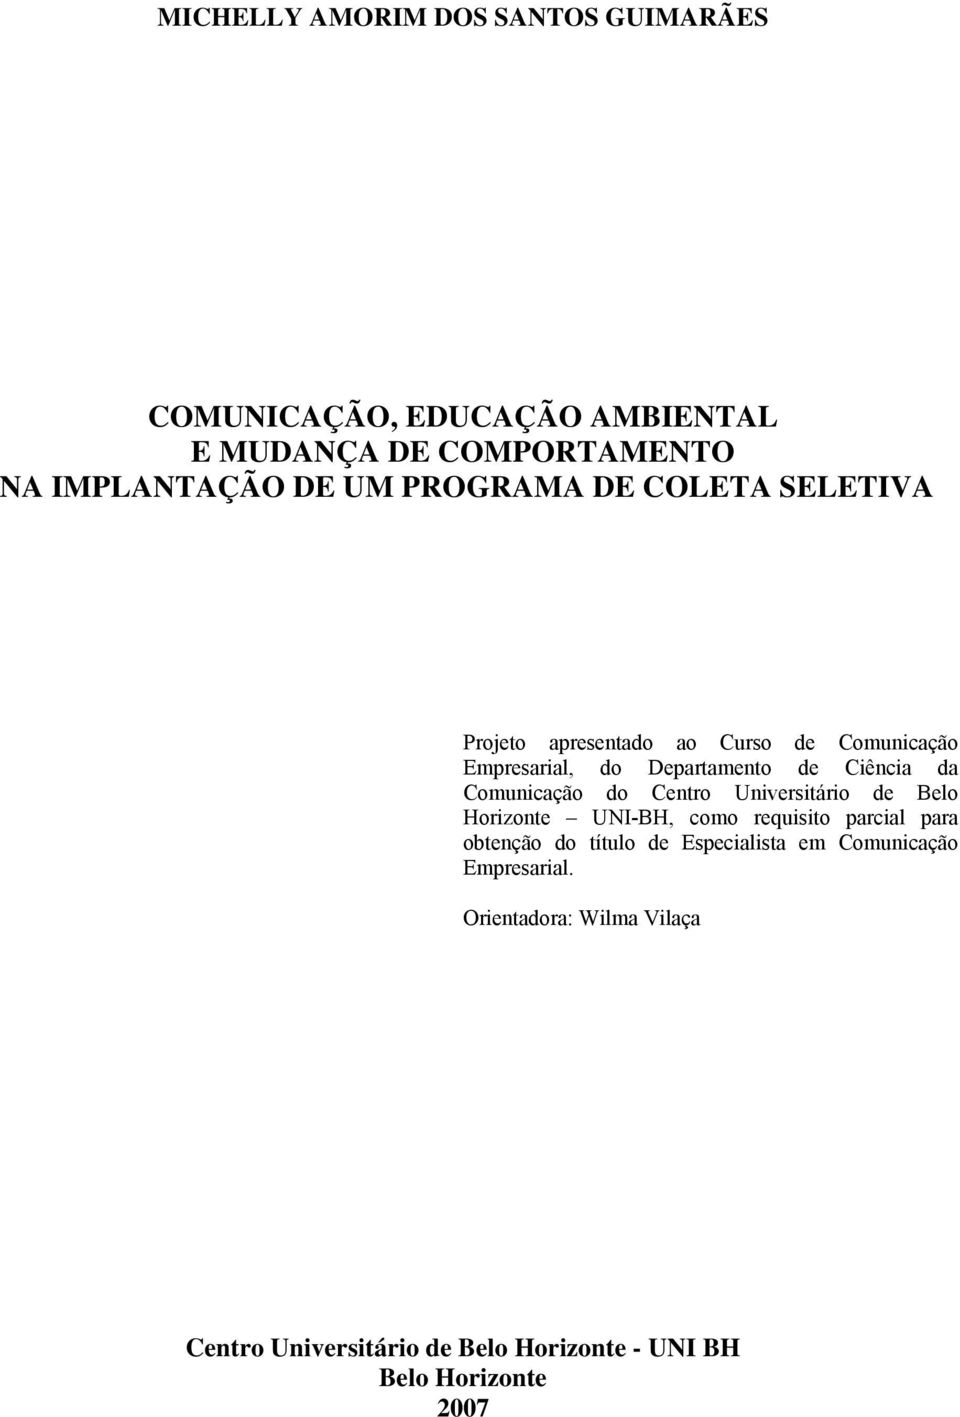 Comunicação do Centro Universitário de Belo Horizonte UNI-BH, como requisito parcial para obtenção do título de